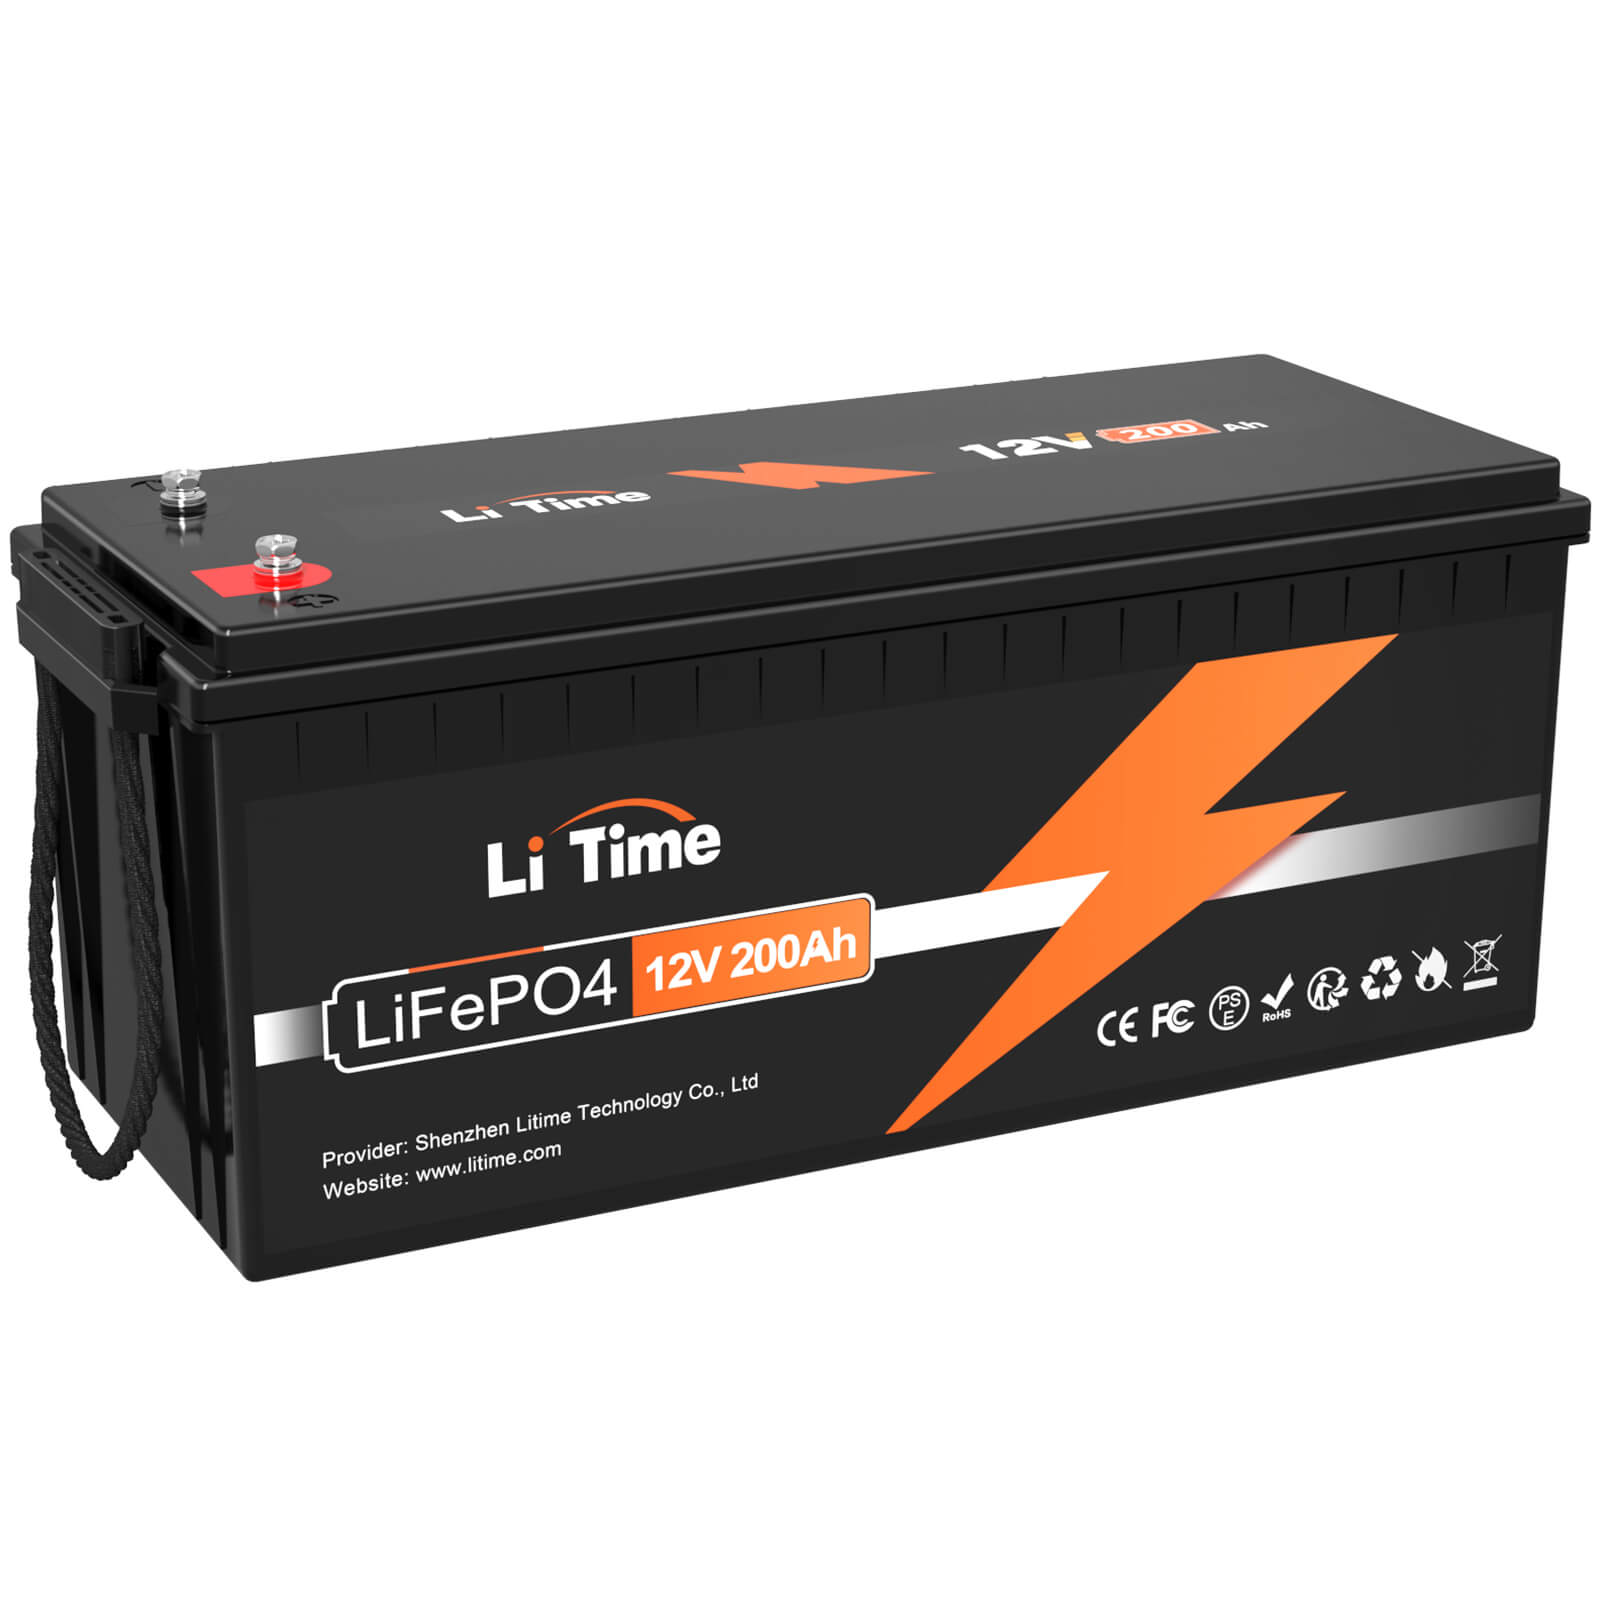 【0% MwSt.】LiTime 12V 200Ah LiFePO4 Batterie